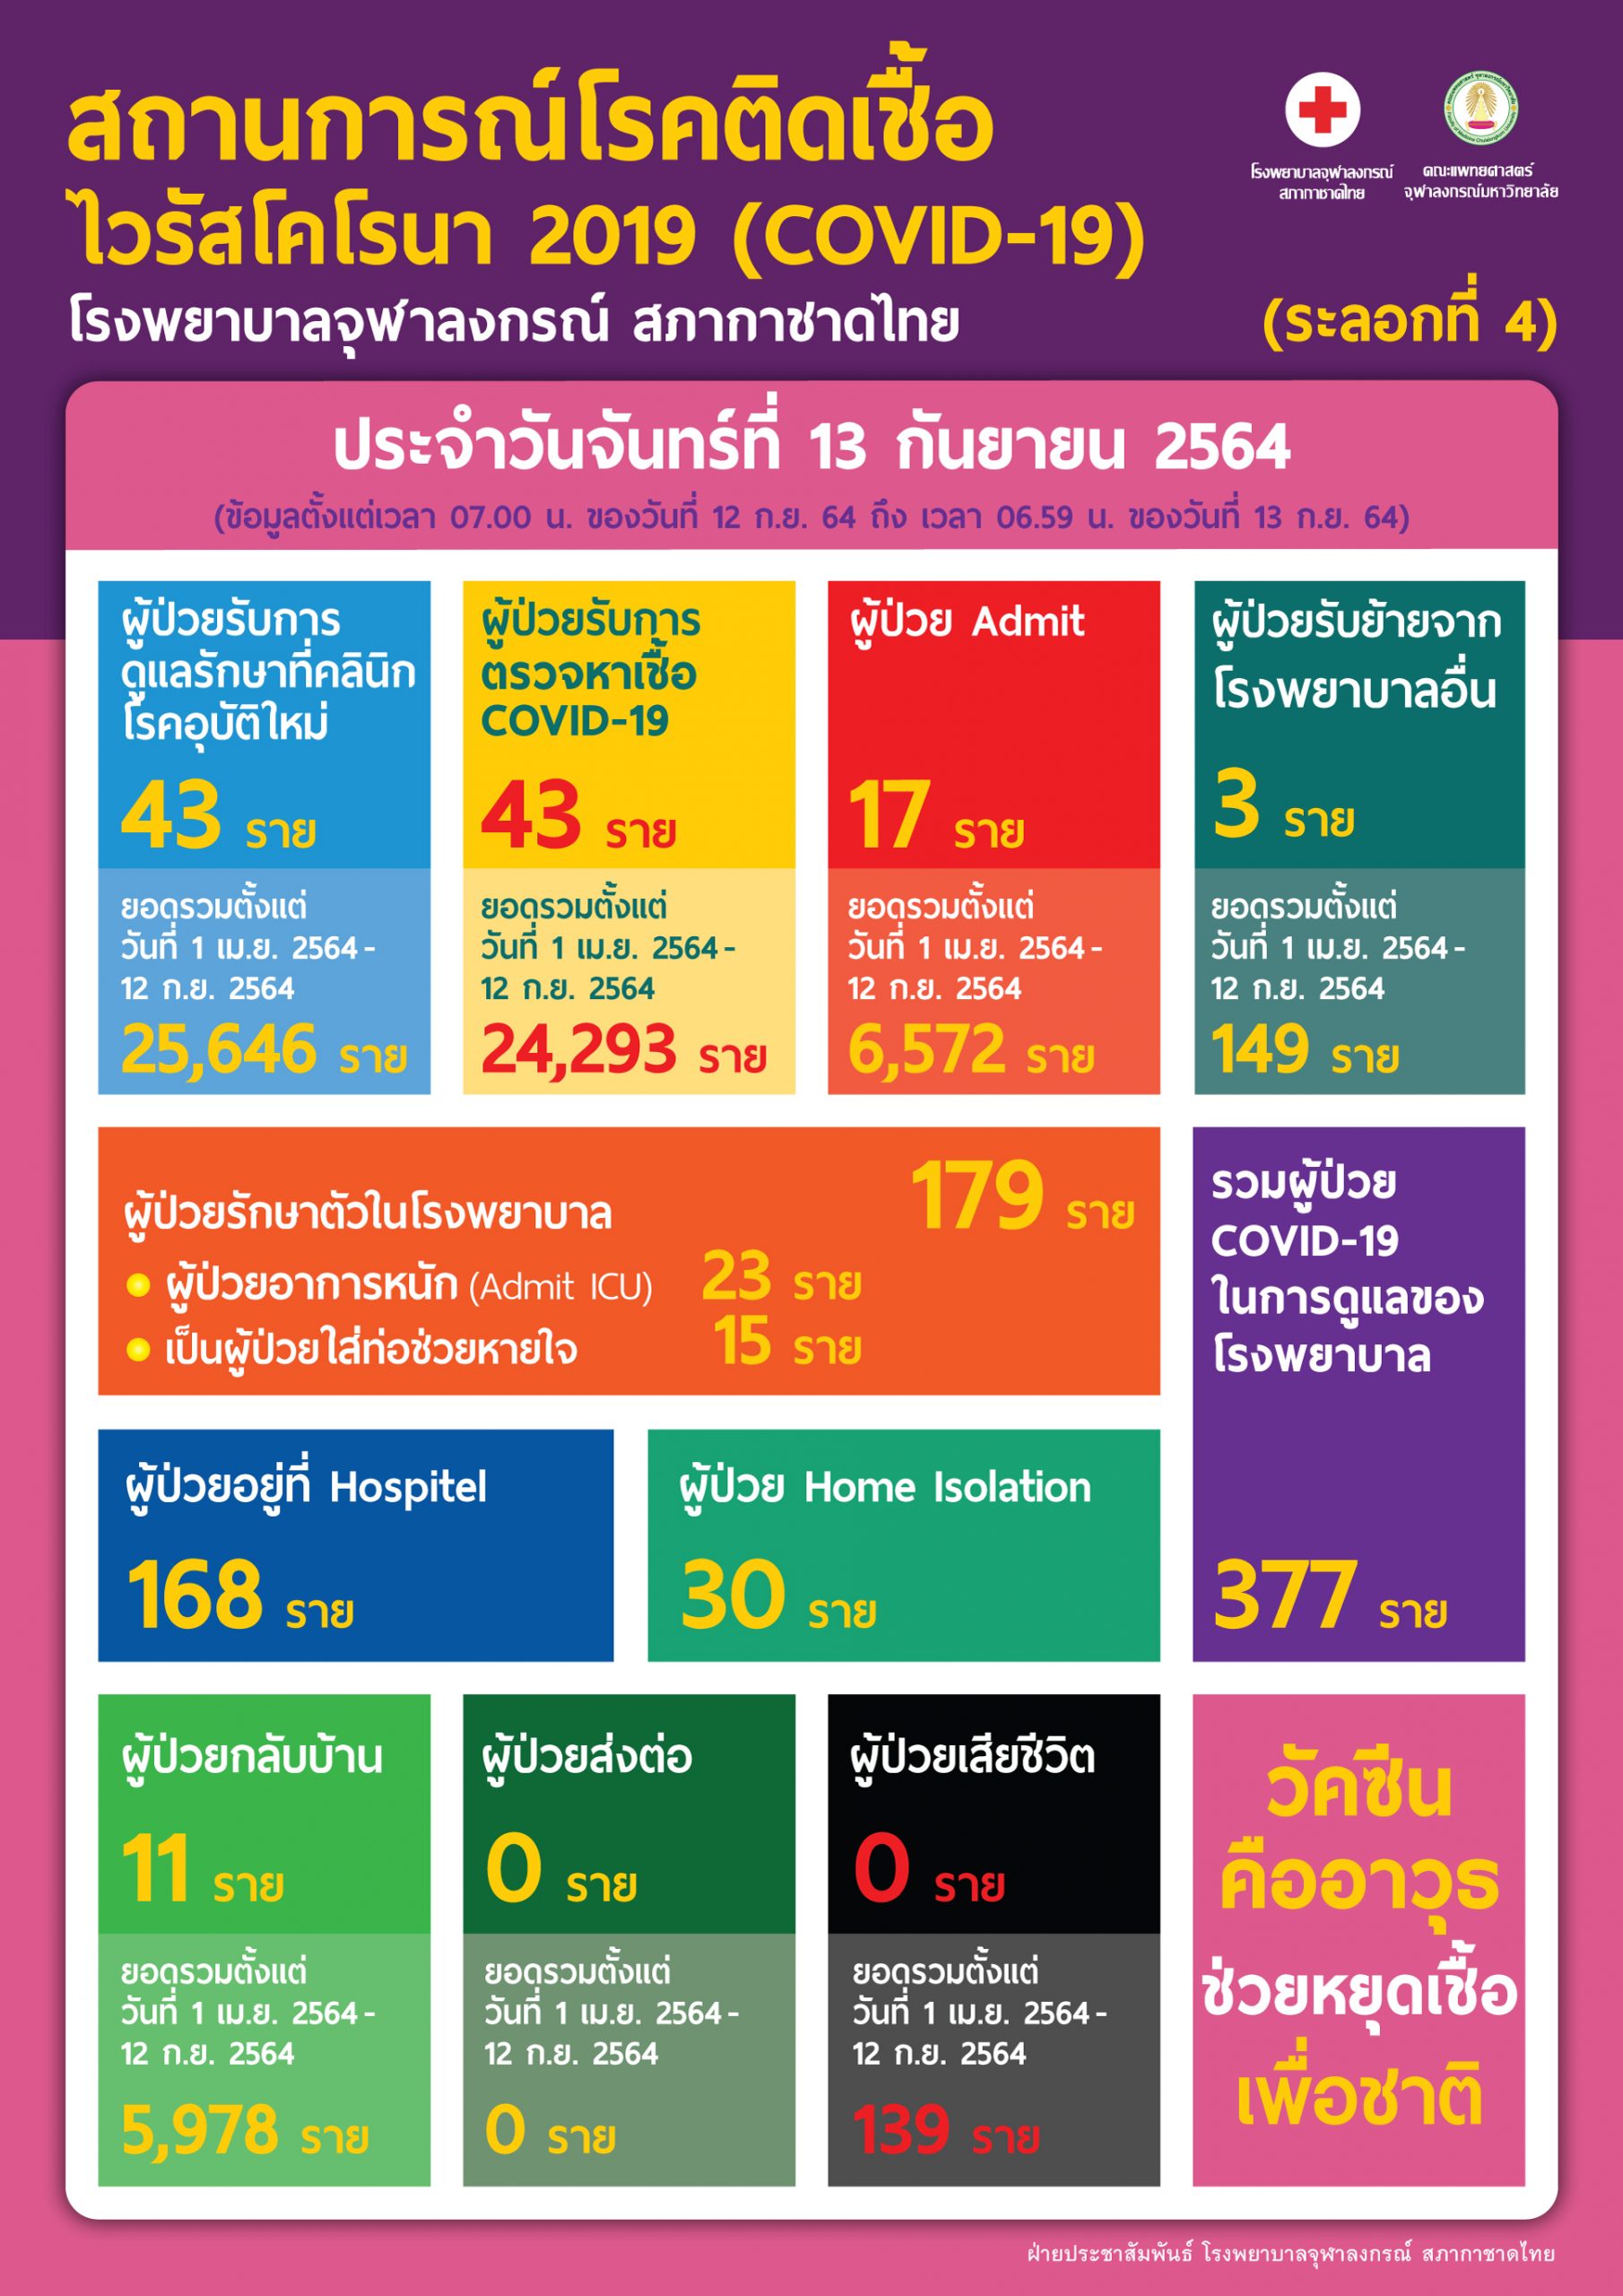 สถานการณ์โรคติดเชื้อไวรัสโคโรนา 2019 (COVID-19) (ระลอกที่ 4) โรงพยาบาลจุฬาลงกรณ์ สภากาชาดไทย ประจำวันจันทร์ที่ 13 กันยายน 2564